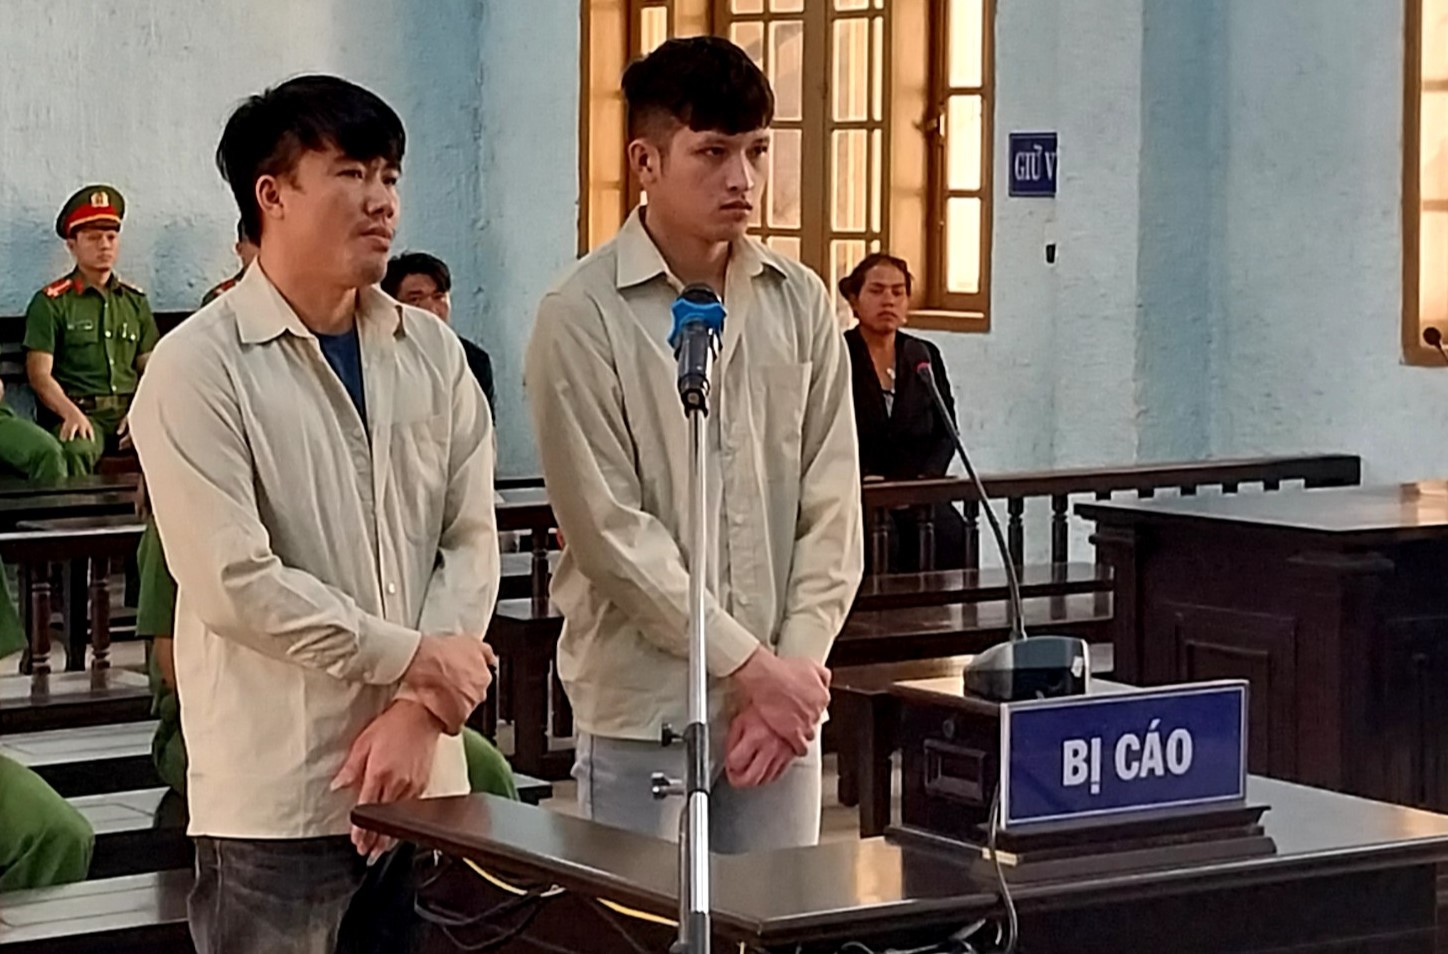 Bán người sang Campuchia, 2 thanh niên lãnh án tù - Ảnh 1.